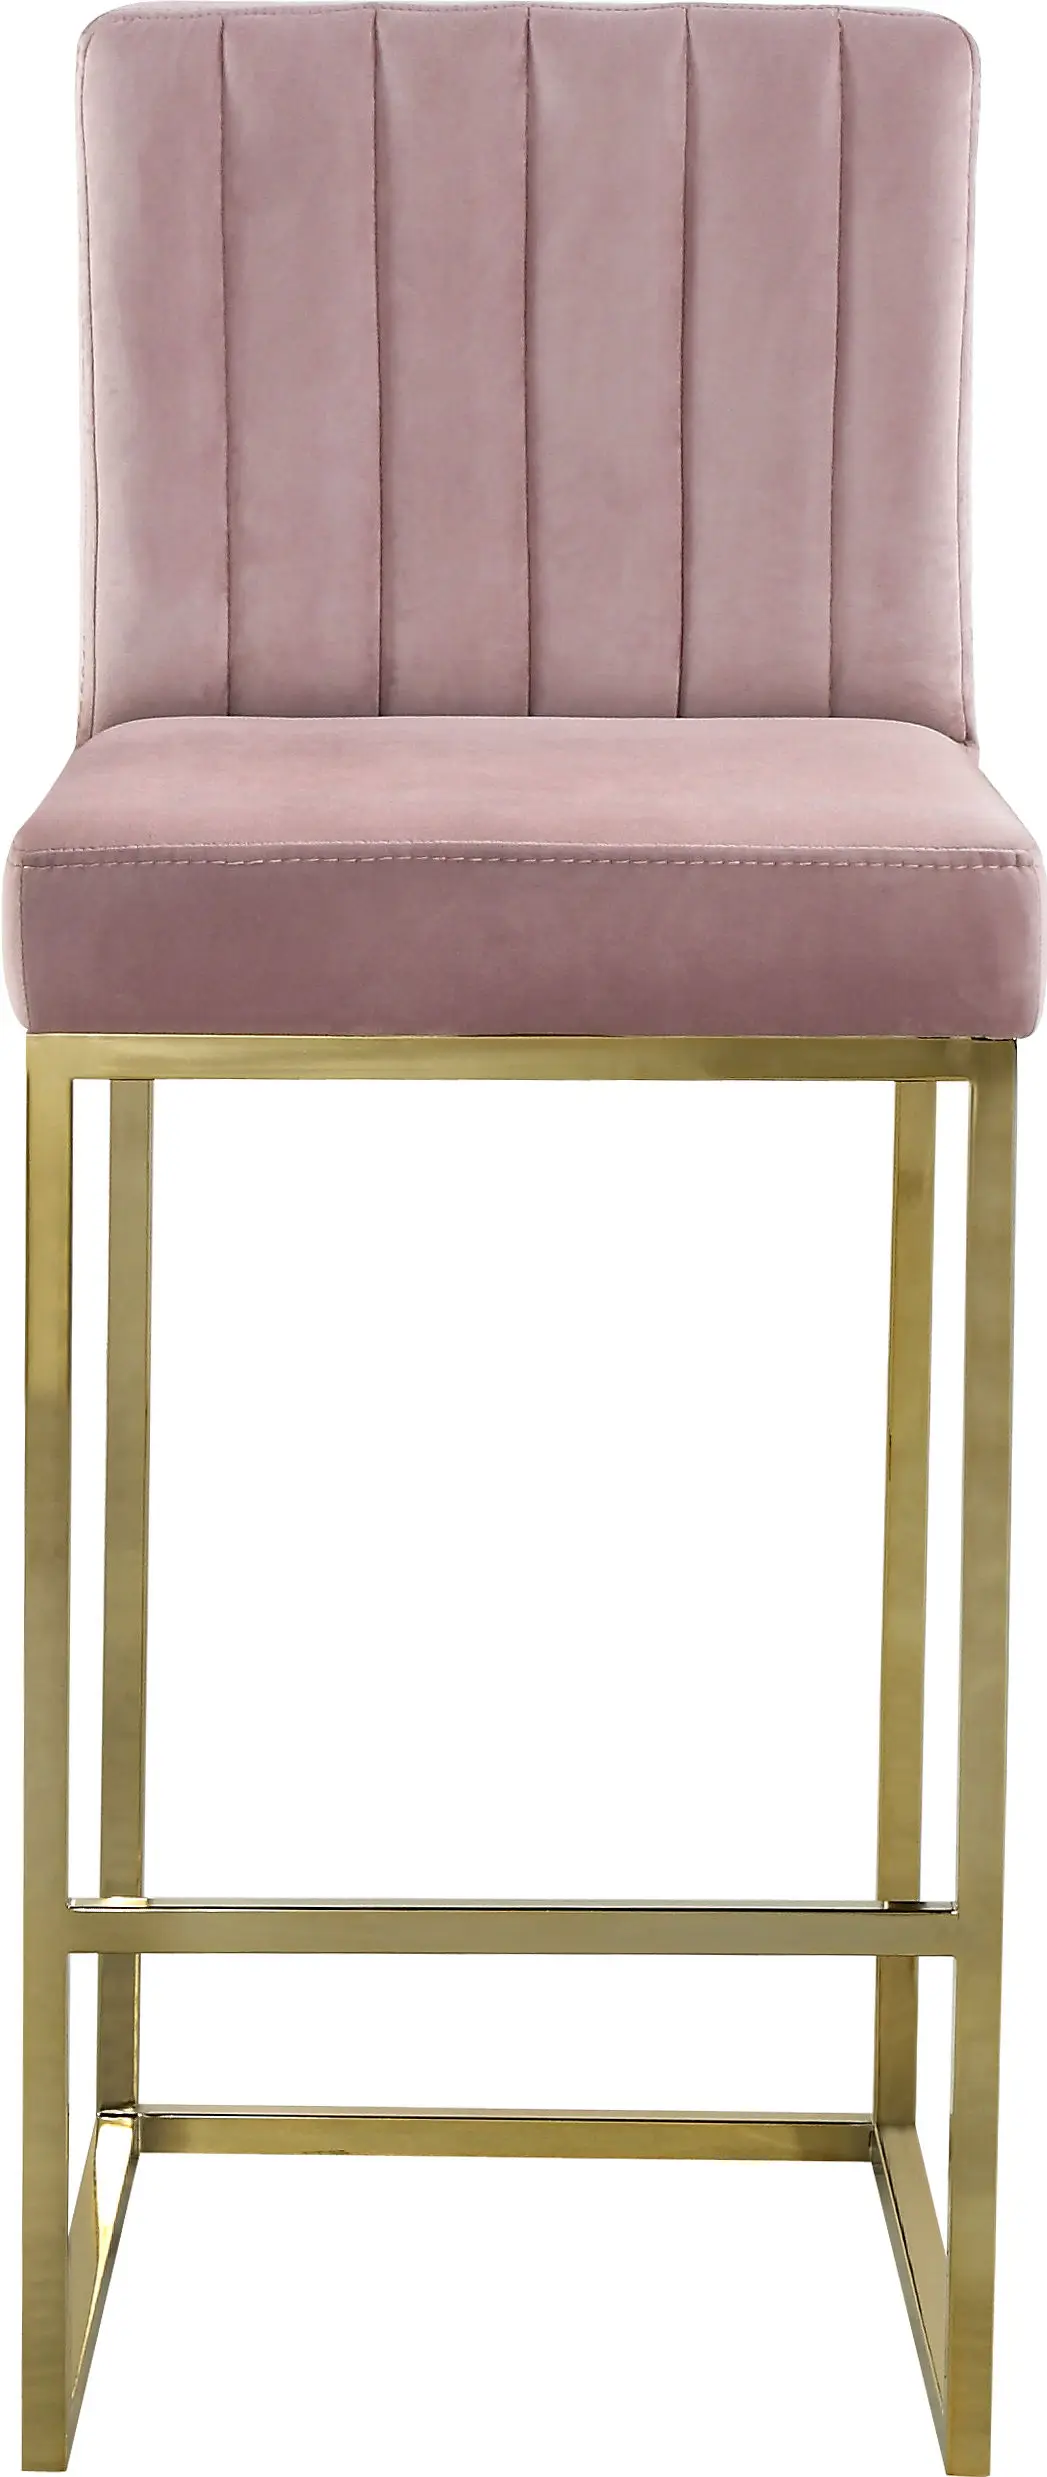 Рамка из золотистого металла барная стойка стулья с высокой спинкой розовый барный стул из нержавеющей стали